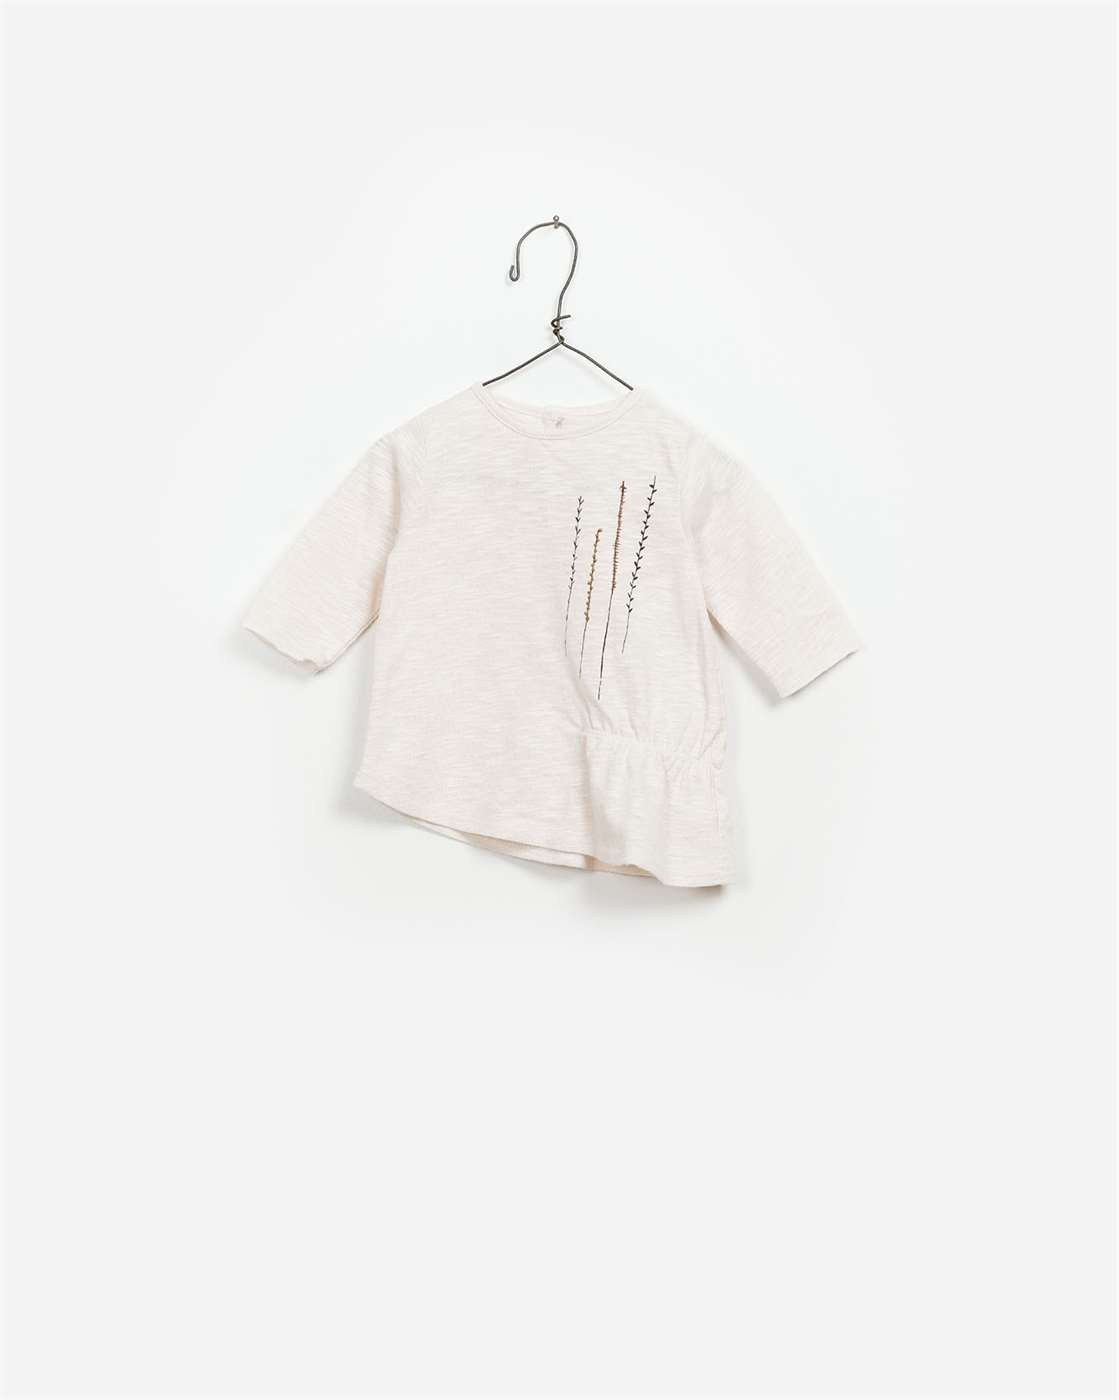 BeeBoo|BeeBoo PlayUp vêtement bébé baby cloth T shirt LS flame coton bio organic cotton blanc white